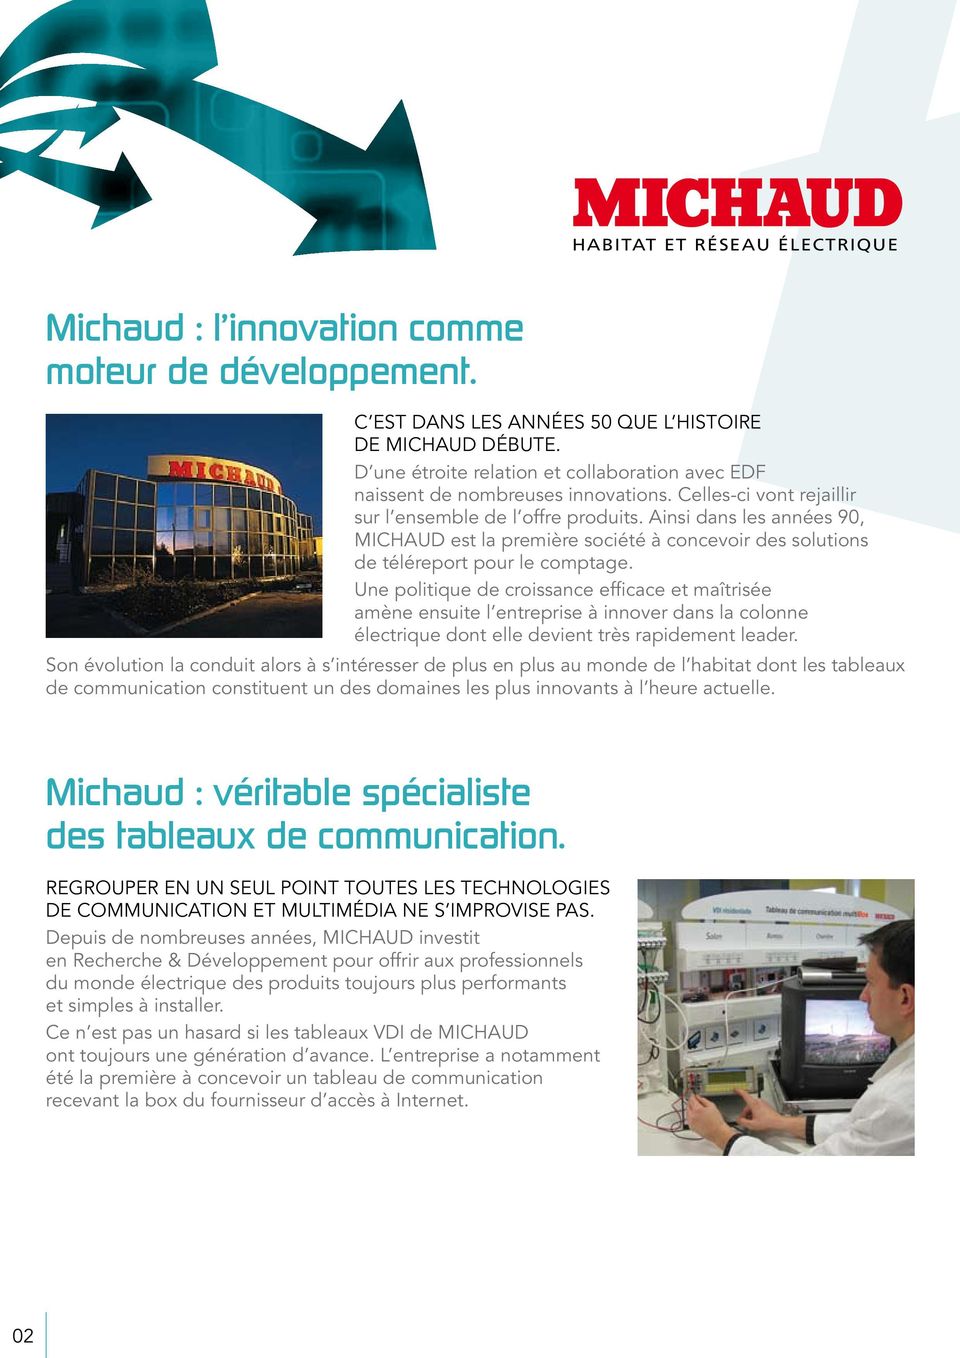 Ainsi dans les années 90, MICHAUD est la première société à concevoir des solutions de téléreport pour le comptage.